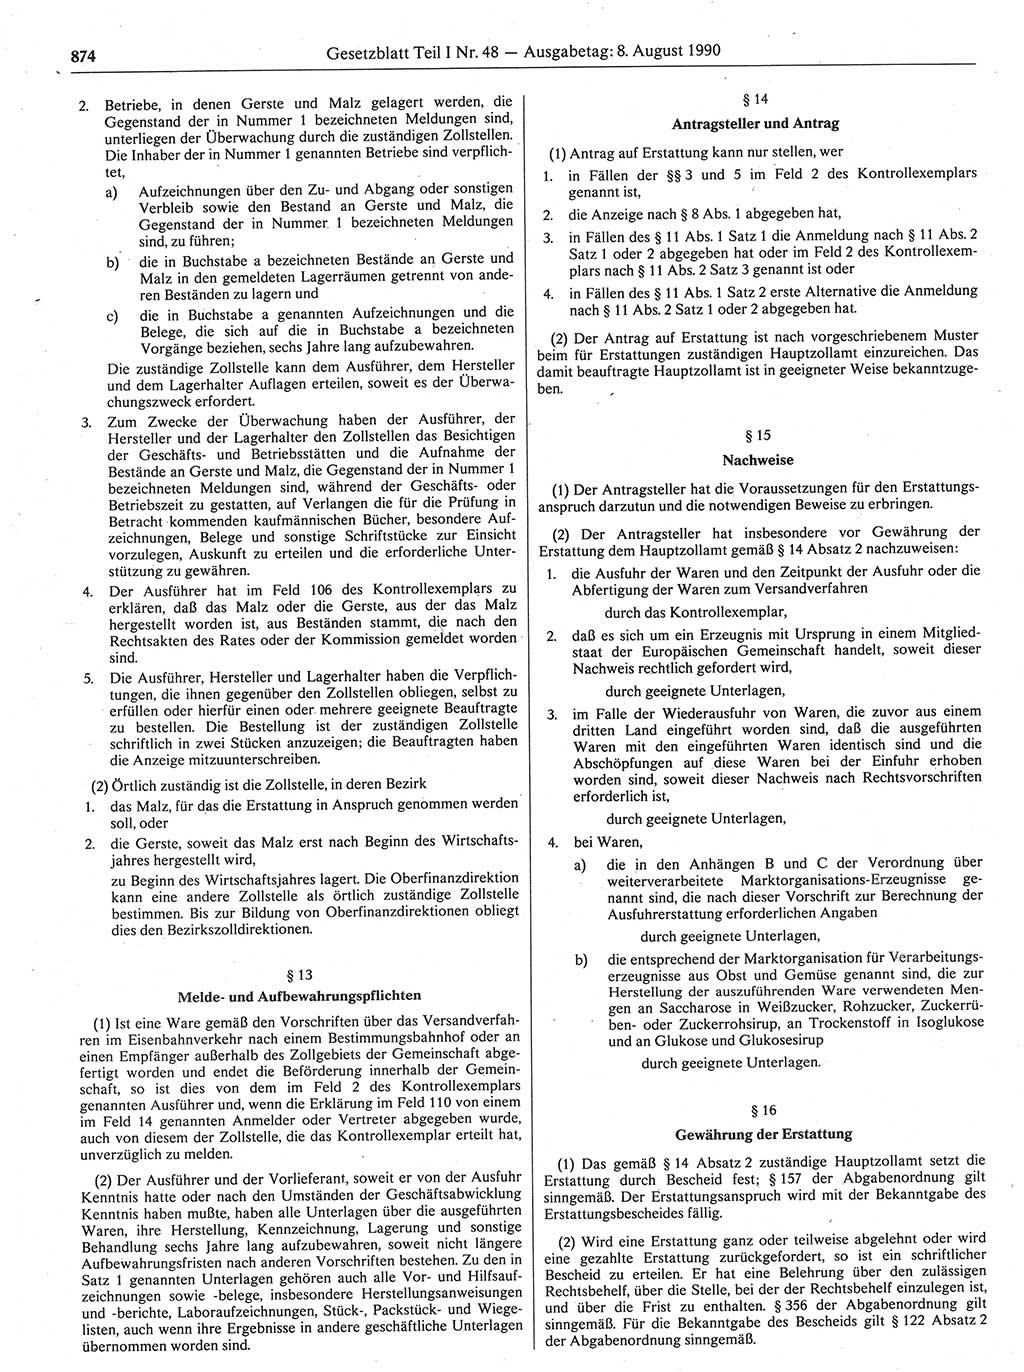 Gesetzblatt (GBl.) der Deutschen Demokratischen Republik (DDR) Teil Ⅰ 1990, Seite 874 (GBl. DDR Ⅰ 1990, S. 874)